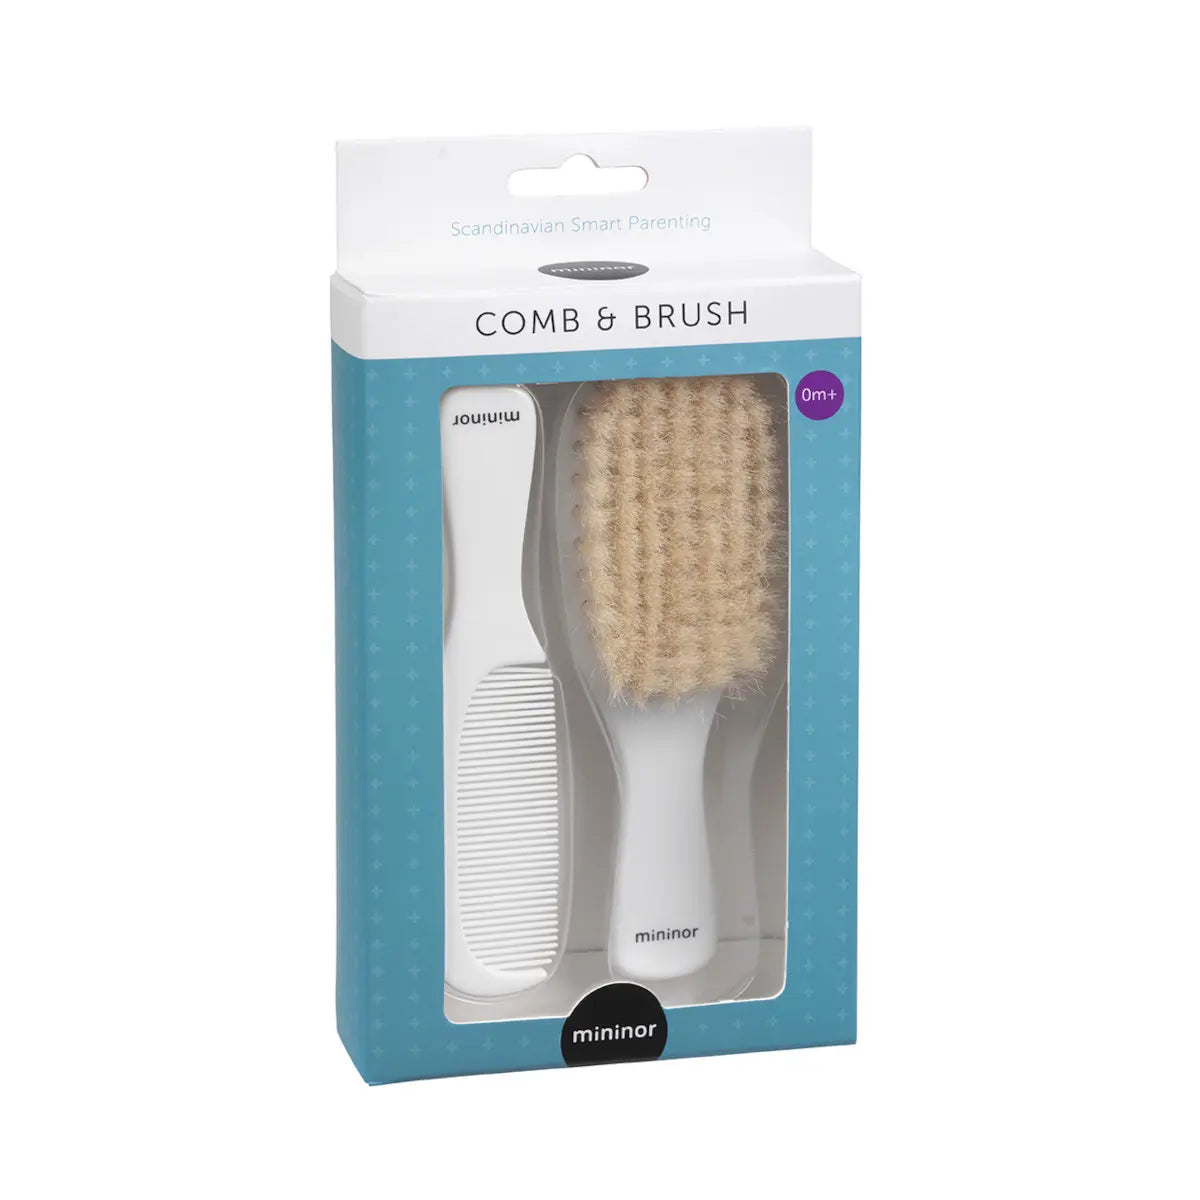 Mininor Baby Comb and Brush Set 0m+